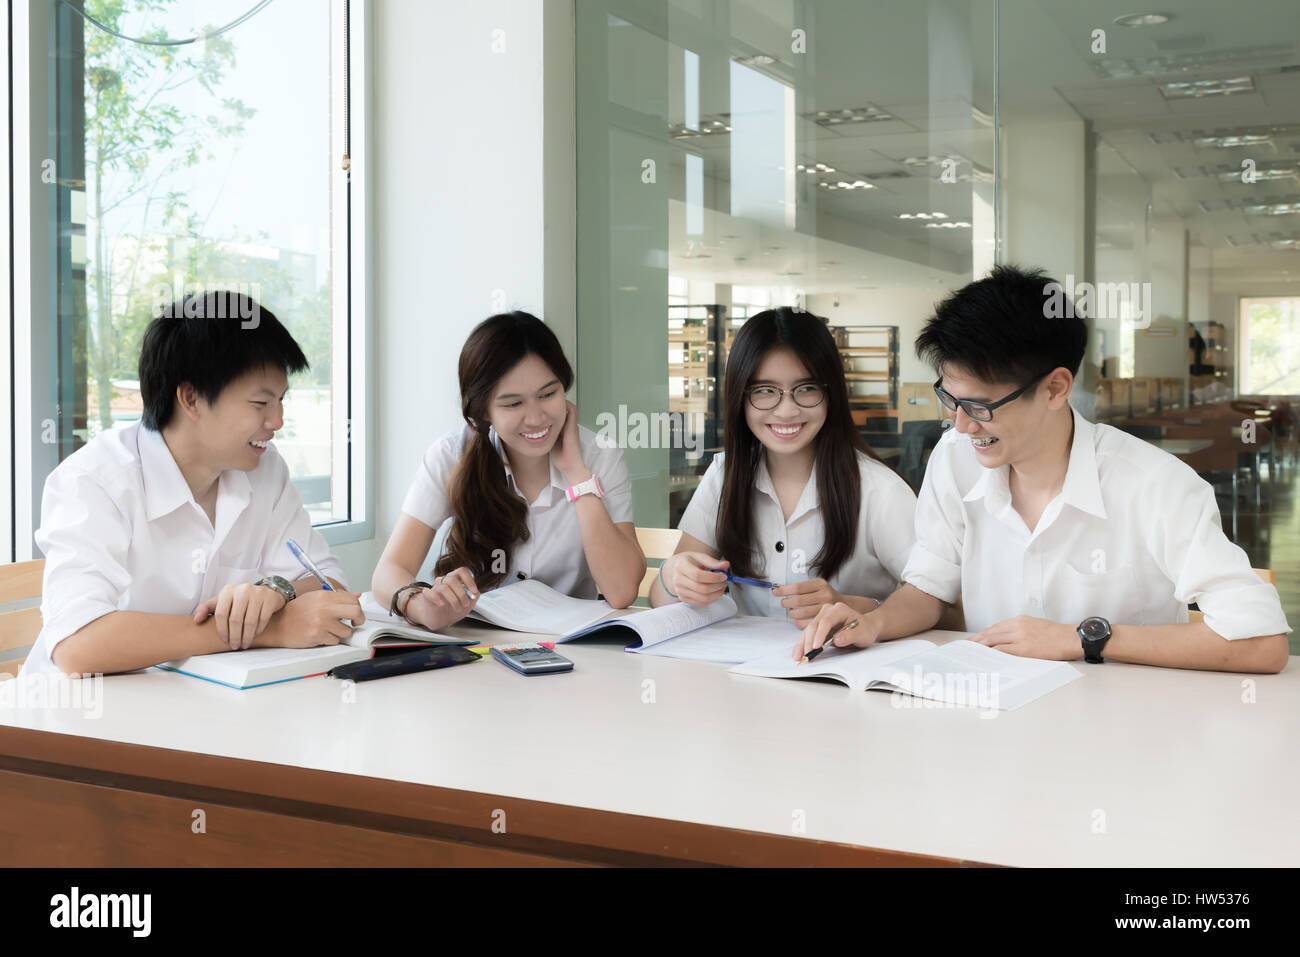 Gruppe von asiatischen Studenten in einheitlichen studieren gemeinsam im Klassenzimmer. Asiatische Studenten gerne studieren. Bildung, Schüler, Menschen Konzept. Stockfoto